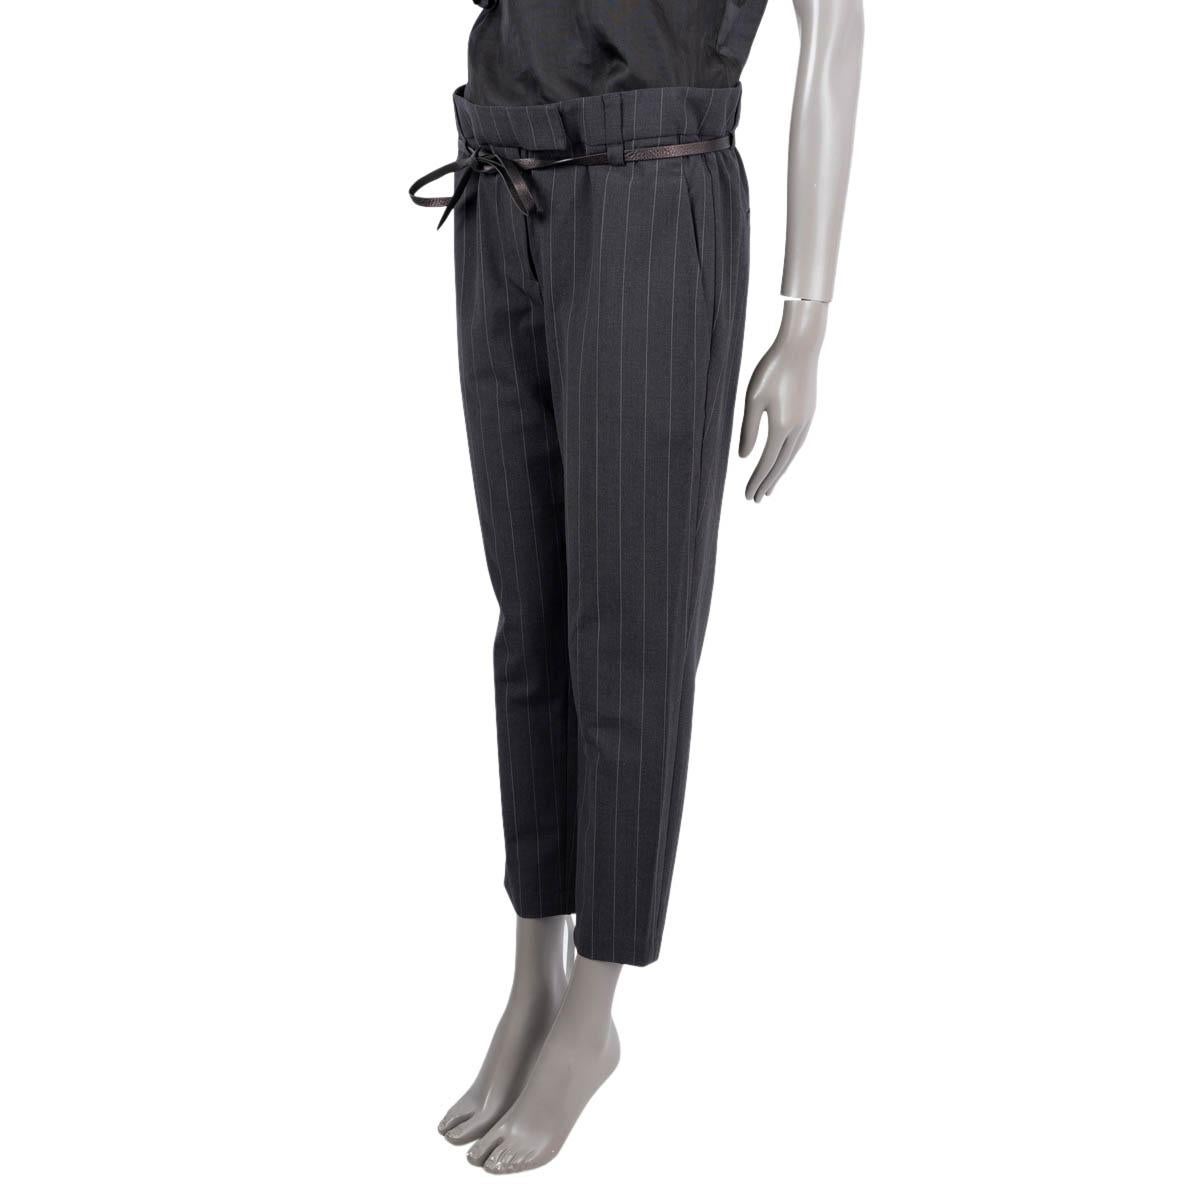 100% authentique Brunello Cucinelli pantalon ceinturé à pinces en laine grise (74%), polyamide (23%), élasthanne (2%) et polyester (1%). Avec deux poches sur les côtés et deux poches passepoilées au dos. Se ferme à l'aide d'un bouton, d'un crochet